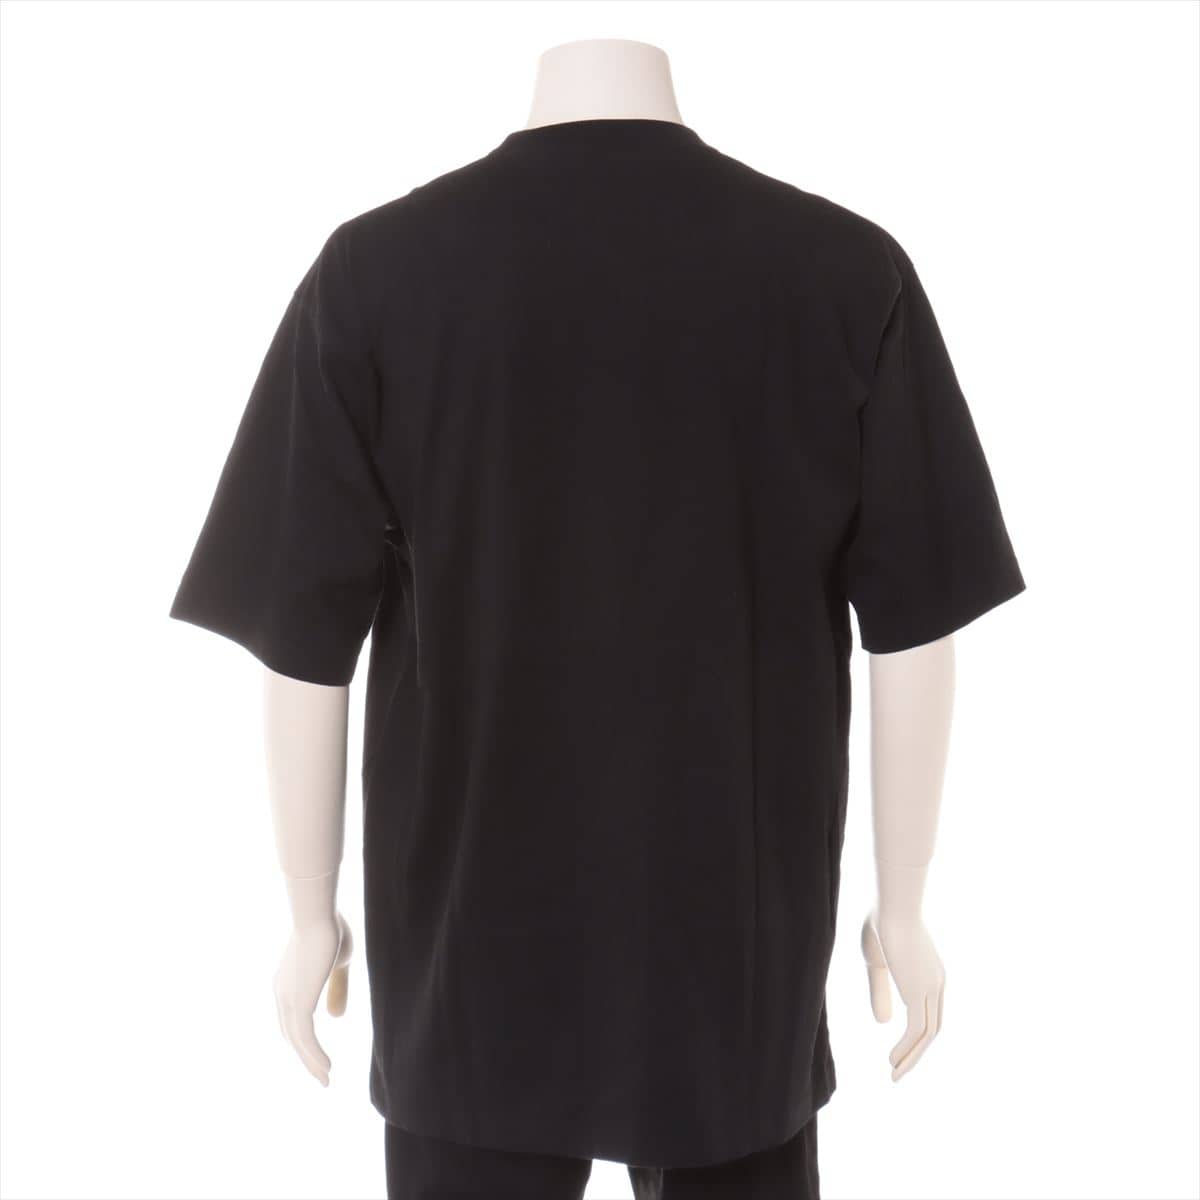 バレンシアガ 20SS コットン Tシャツ S メンズ ブラック  ロゴプリントTシャツ 620969